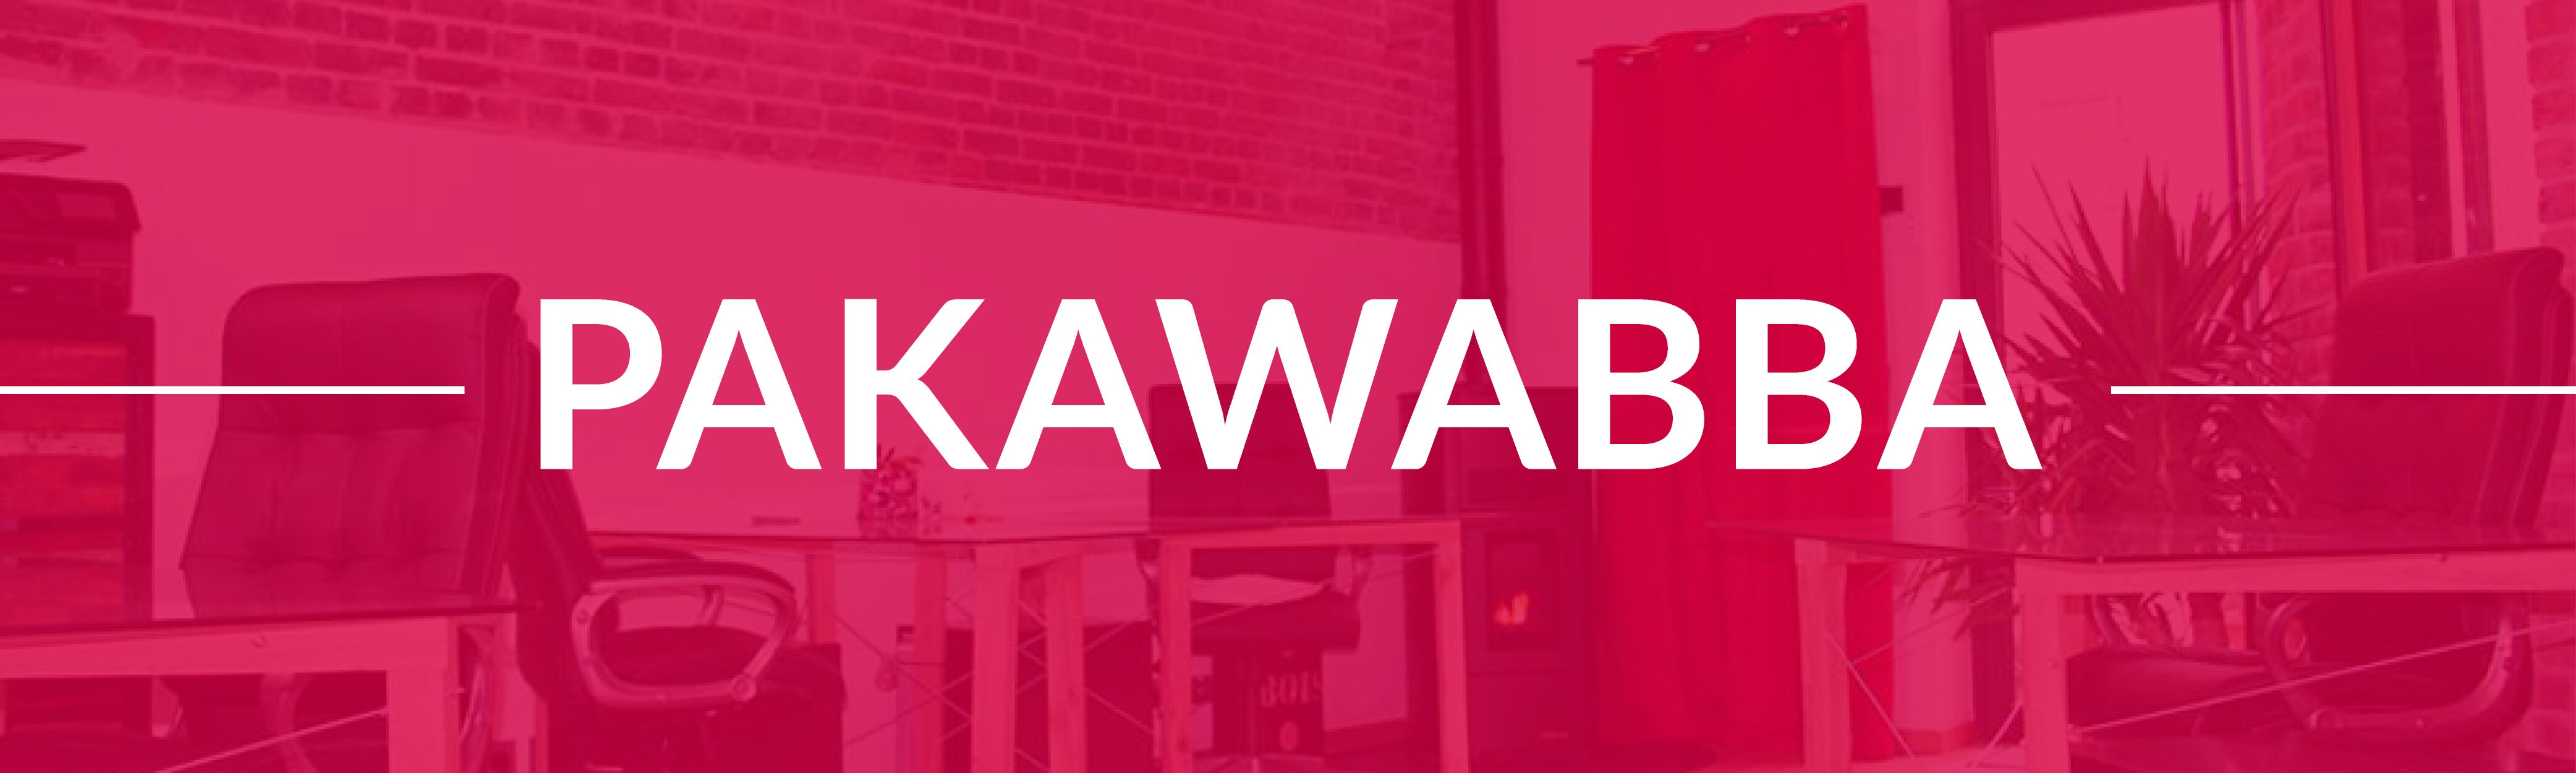 Pakawabba, un espace de coworking pour les créatifs freelances